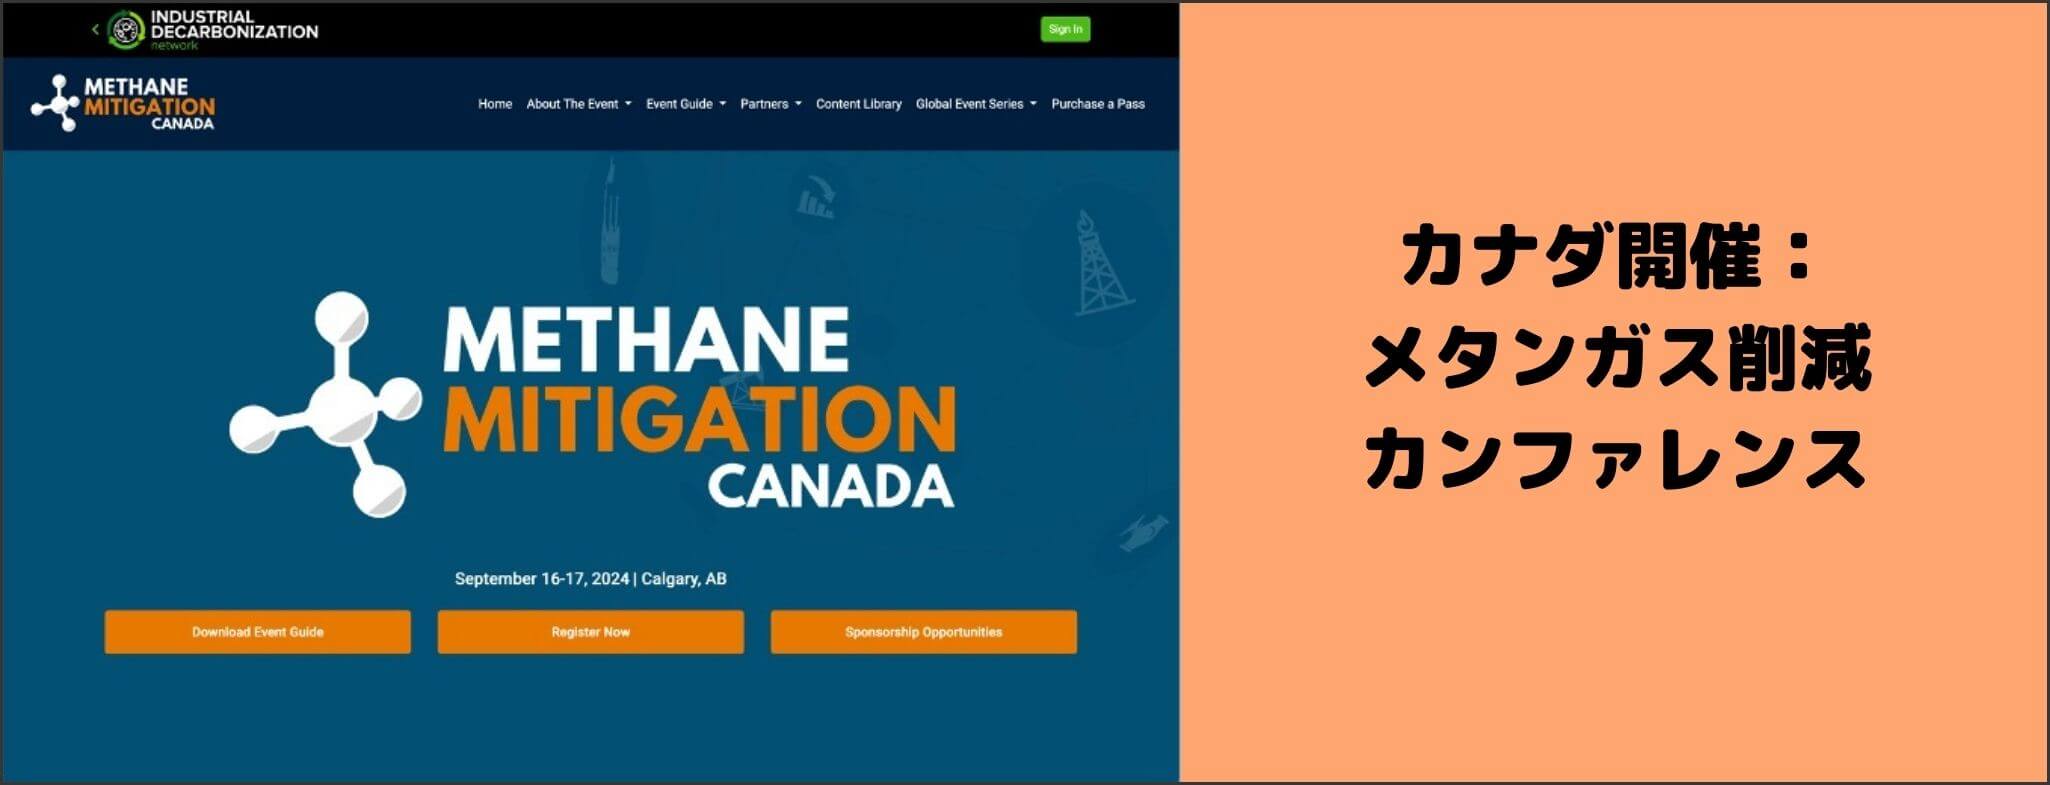 Methane Mitigation Summit Canada 2024 イベントグローブ